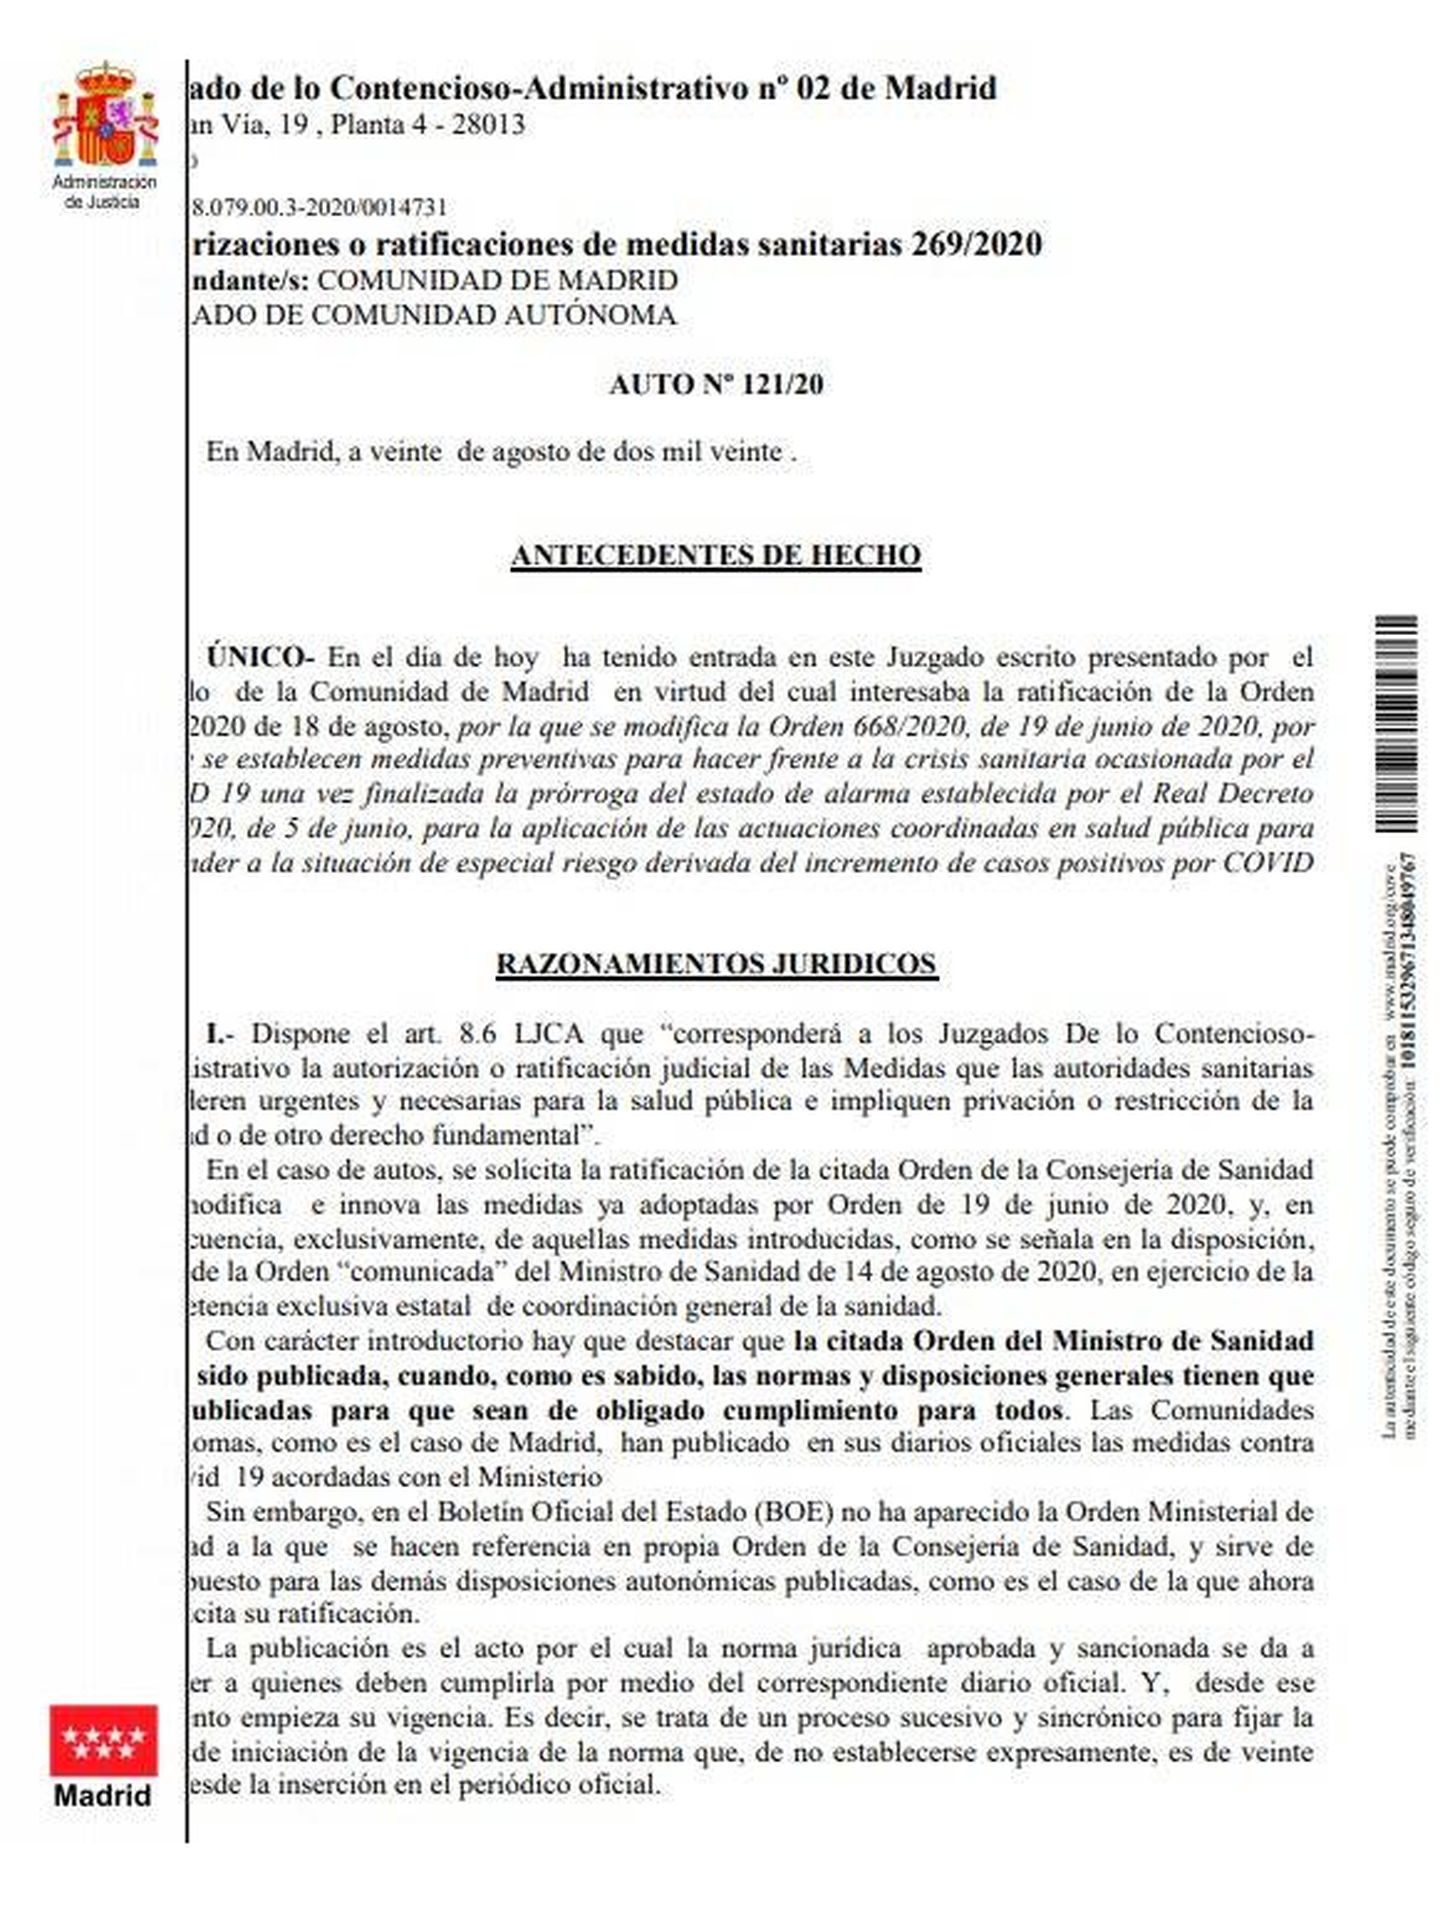 Consulte aquí el auto judicial completo que anula la prohibición de fumar al aire libre por el coronavirus en la Comunidad de Madrid.